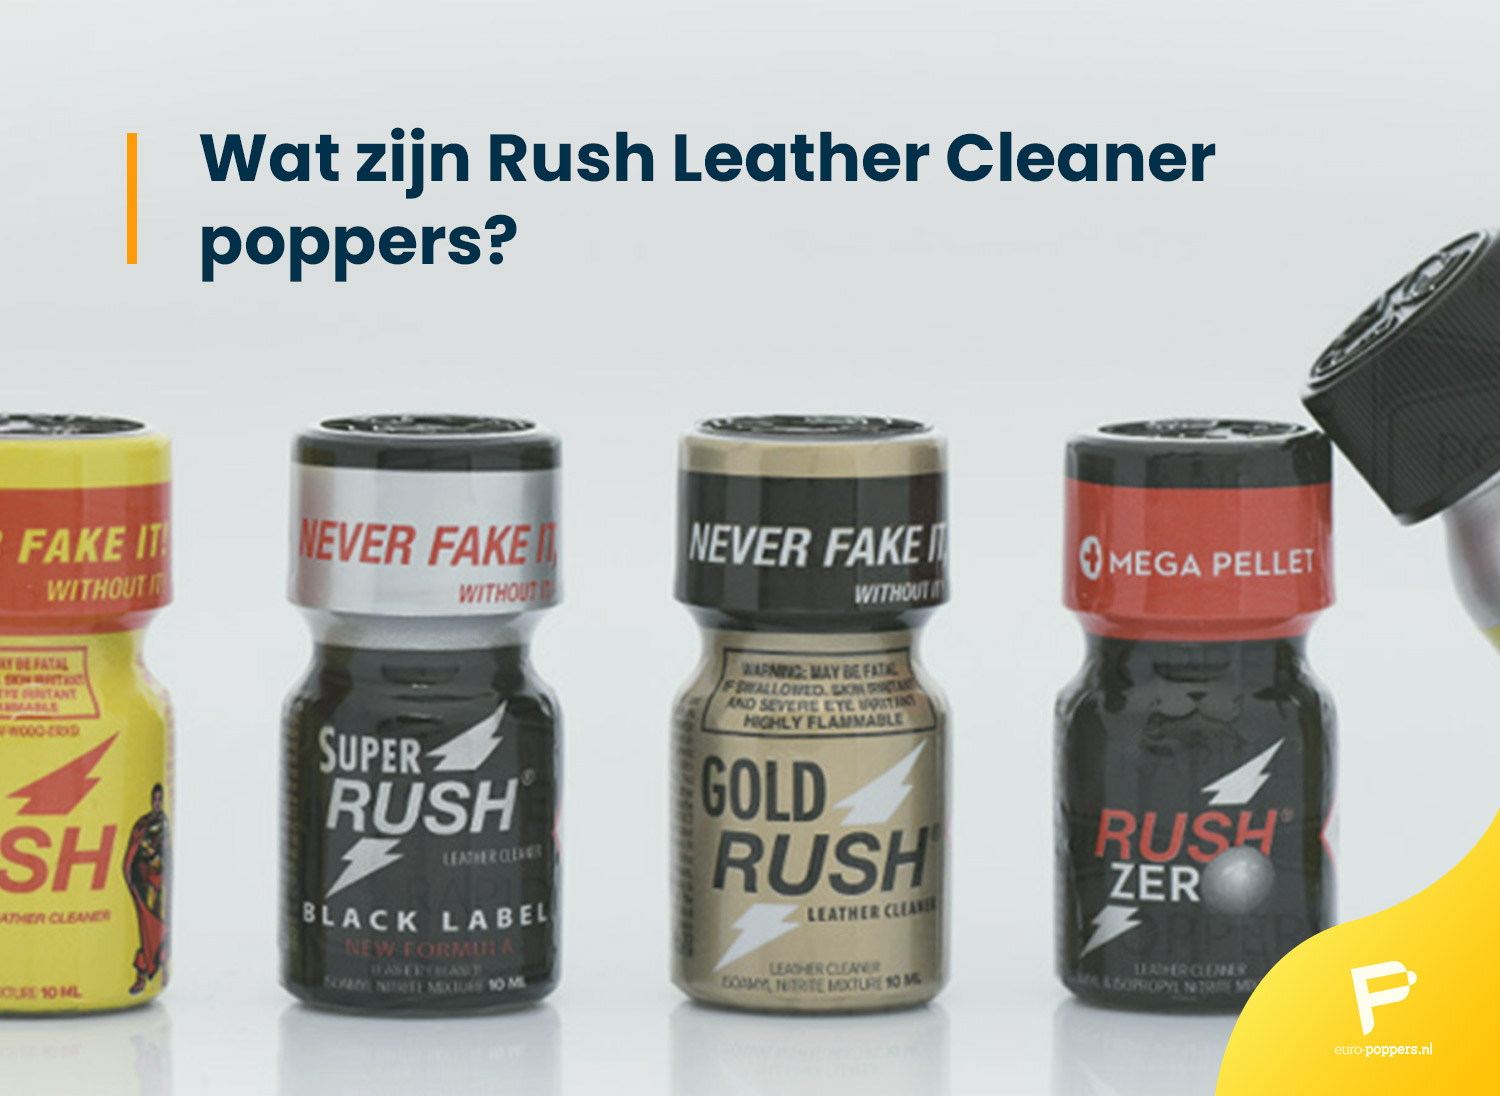 Je bekijkt nu Wat zijn Rush Leather Cleaner poppers?